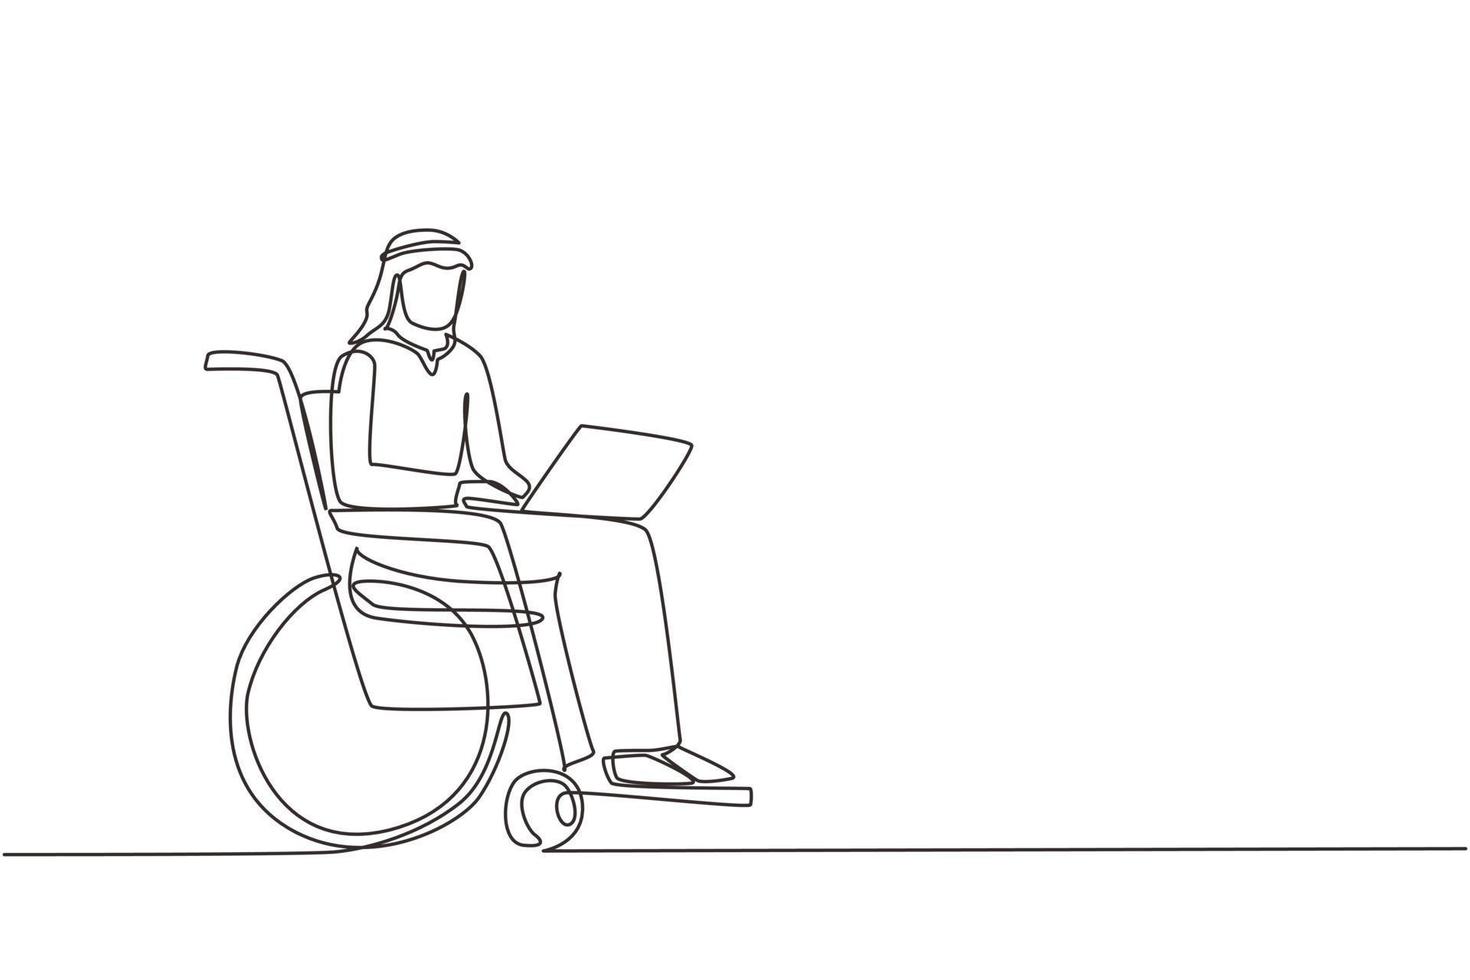 enda kontinuerlig linjeritning funktionshindrade arabisk man arbetar på bärbar dator. rullstol, idé, dator. frilans, funktionshinder. onlinejobb, startup. fysisk funktionsnedsättning och samhälle en linje rita design vektor